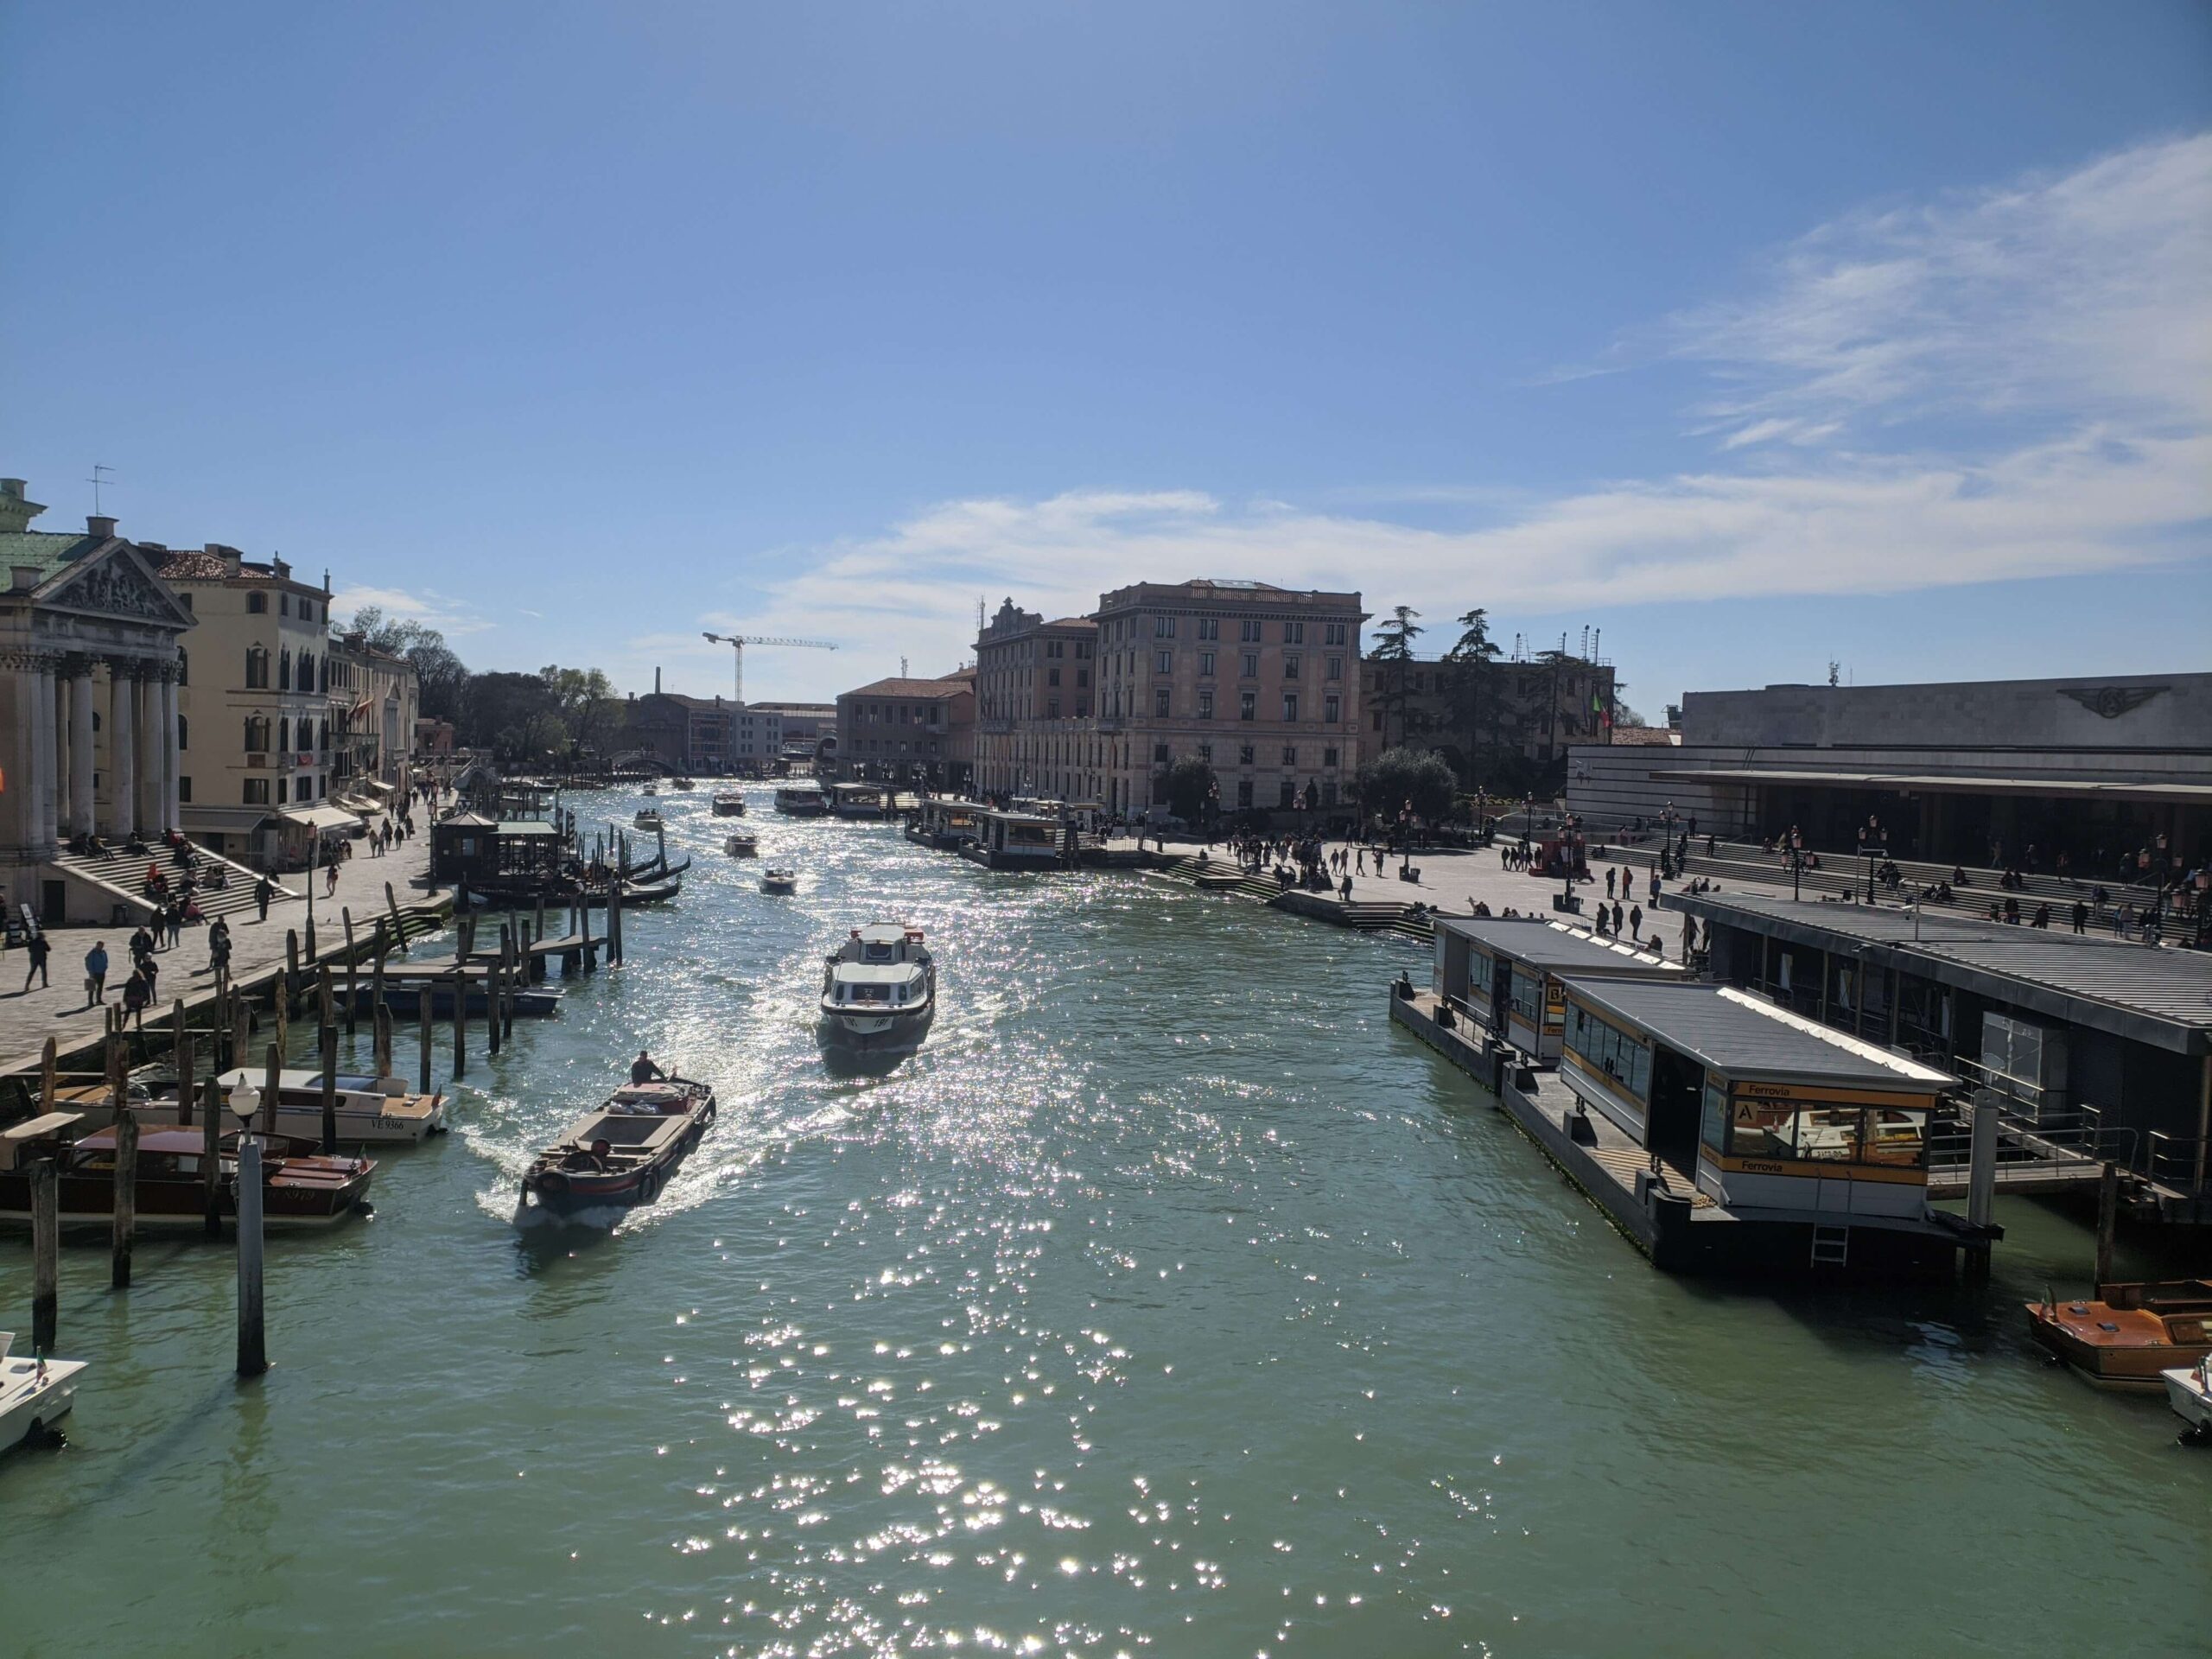 Uma visão ampla do Grande Canal de Veneza em um dia ensolarado, com embarcações transitando, pessoas caminhando ao longo das margens e arquitetura clássica veneziana em ambos os lados.